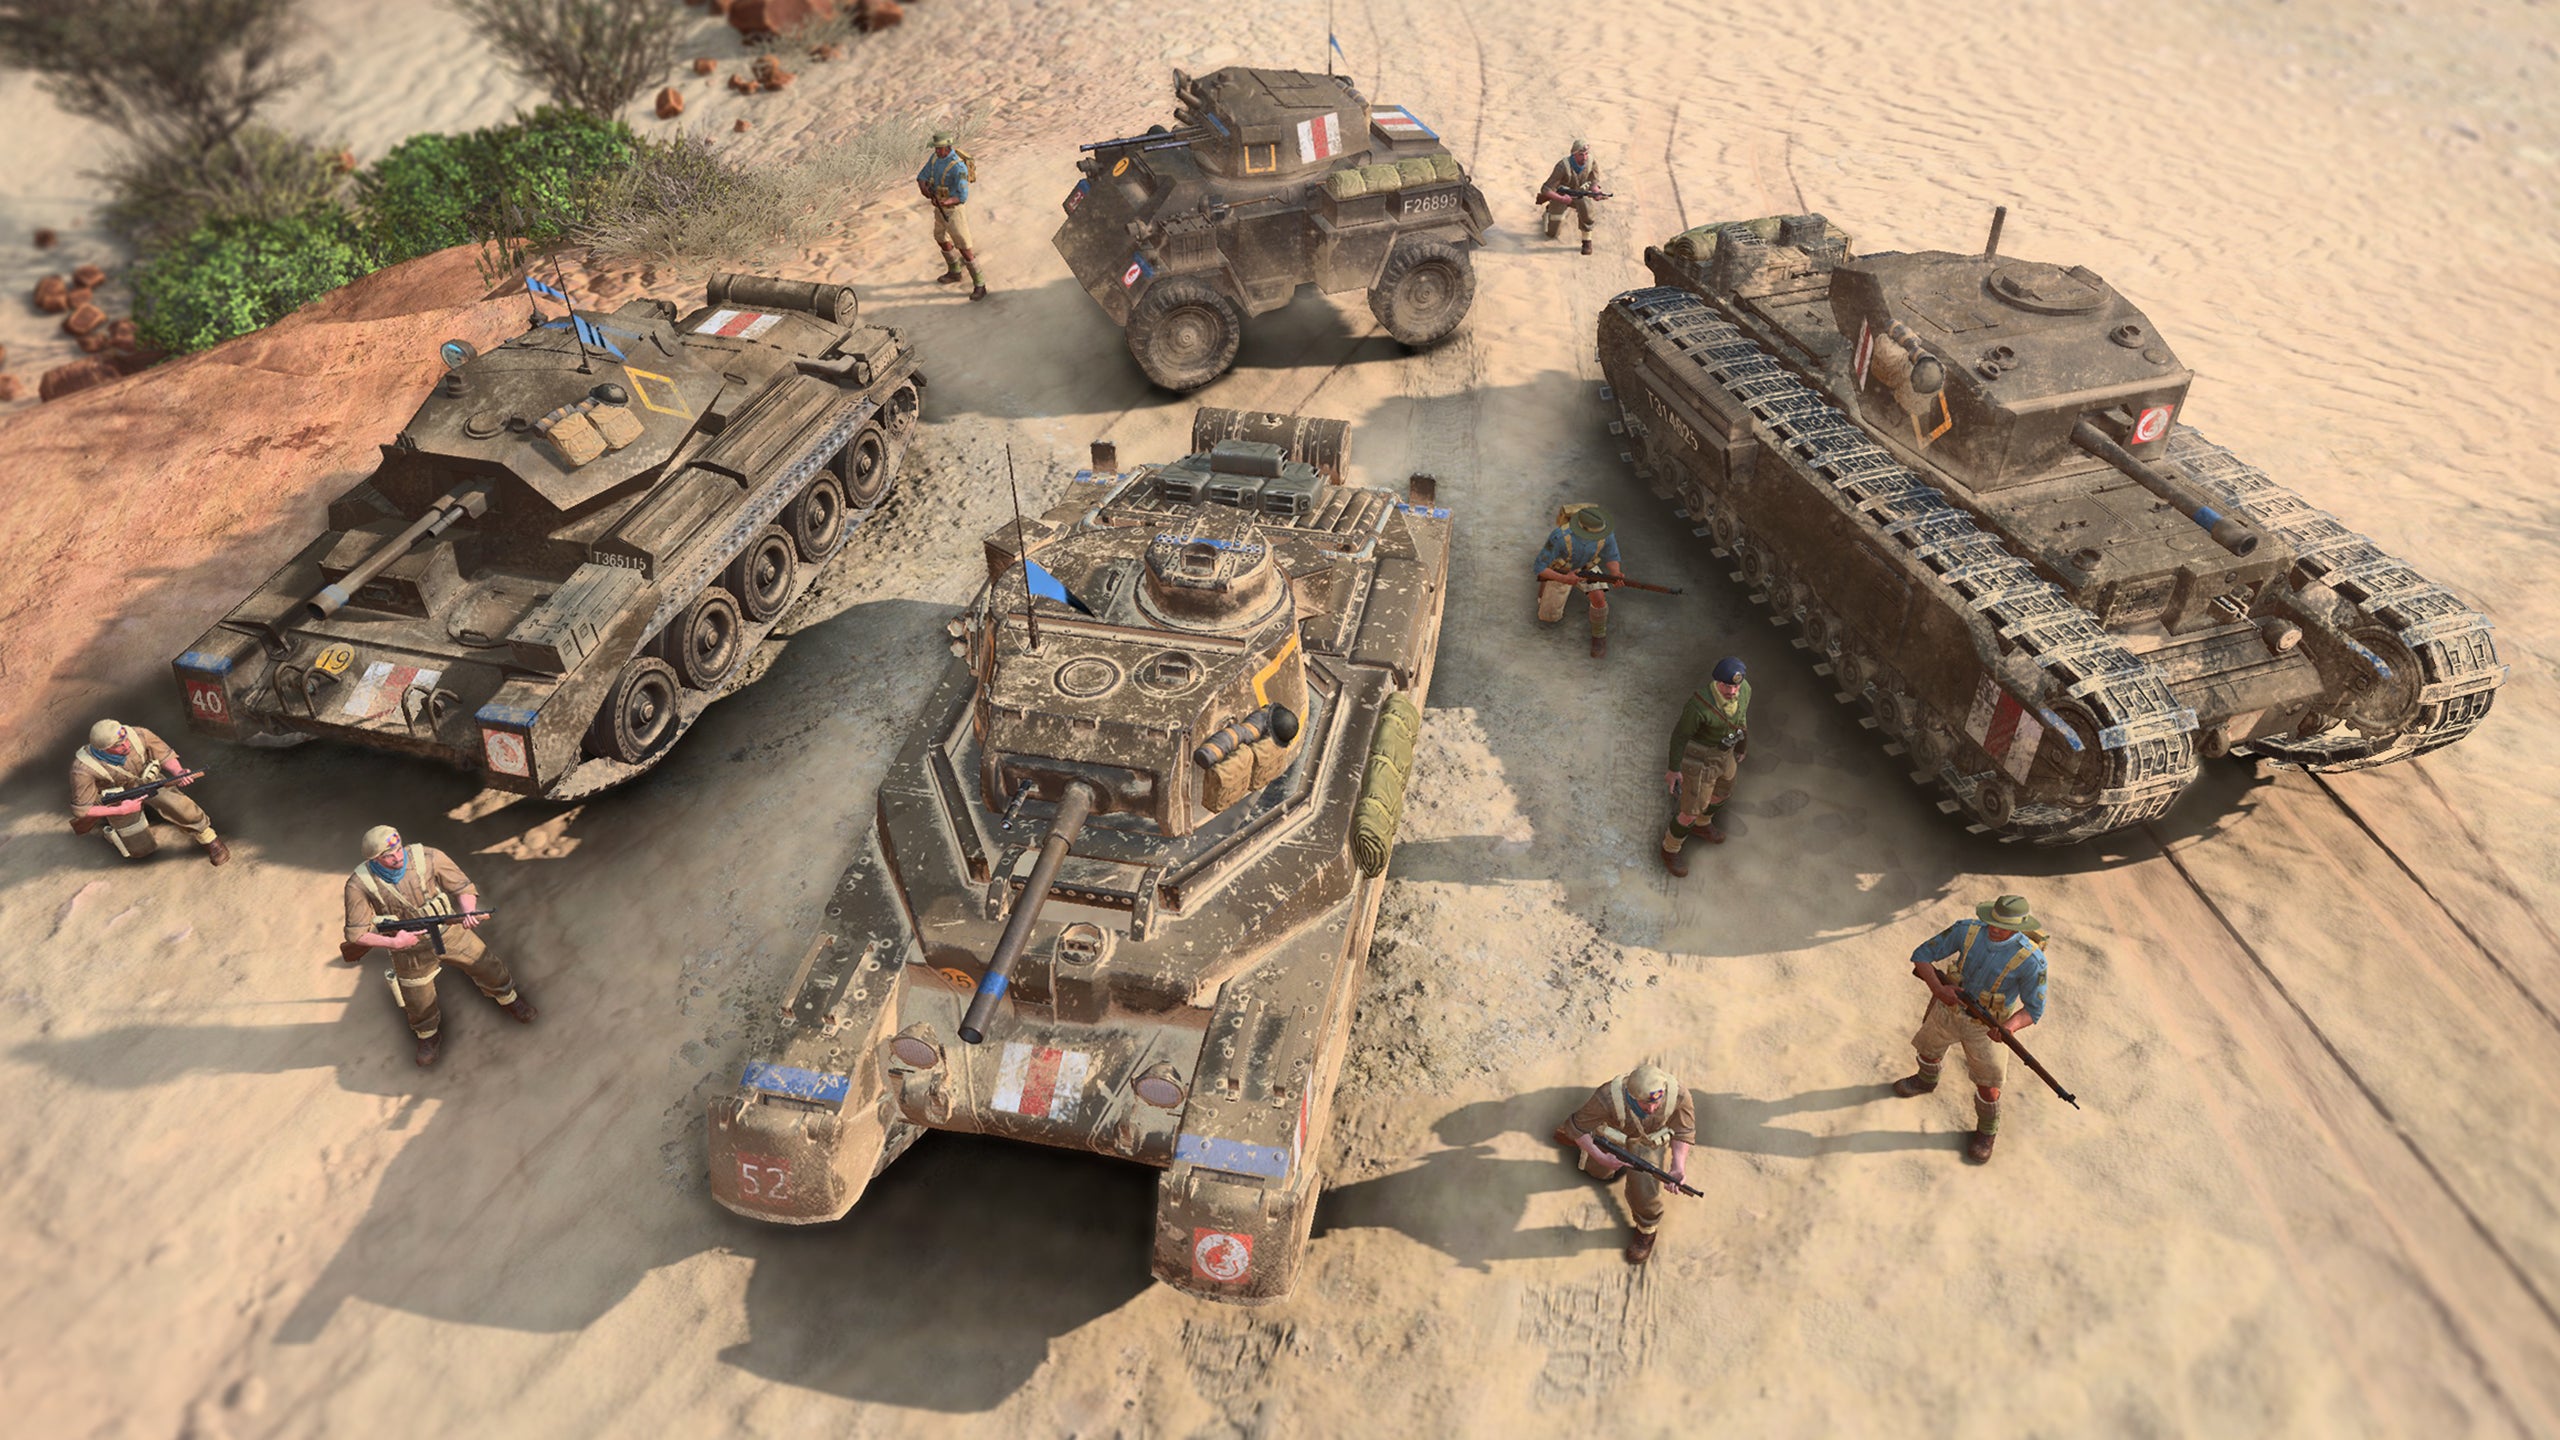 Avance de Company of Heroes 3: una vista de cuatro tanques británicos y algunas unidades de infantería en el desierto